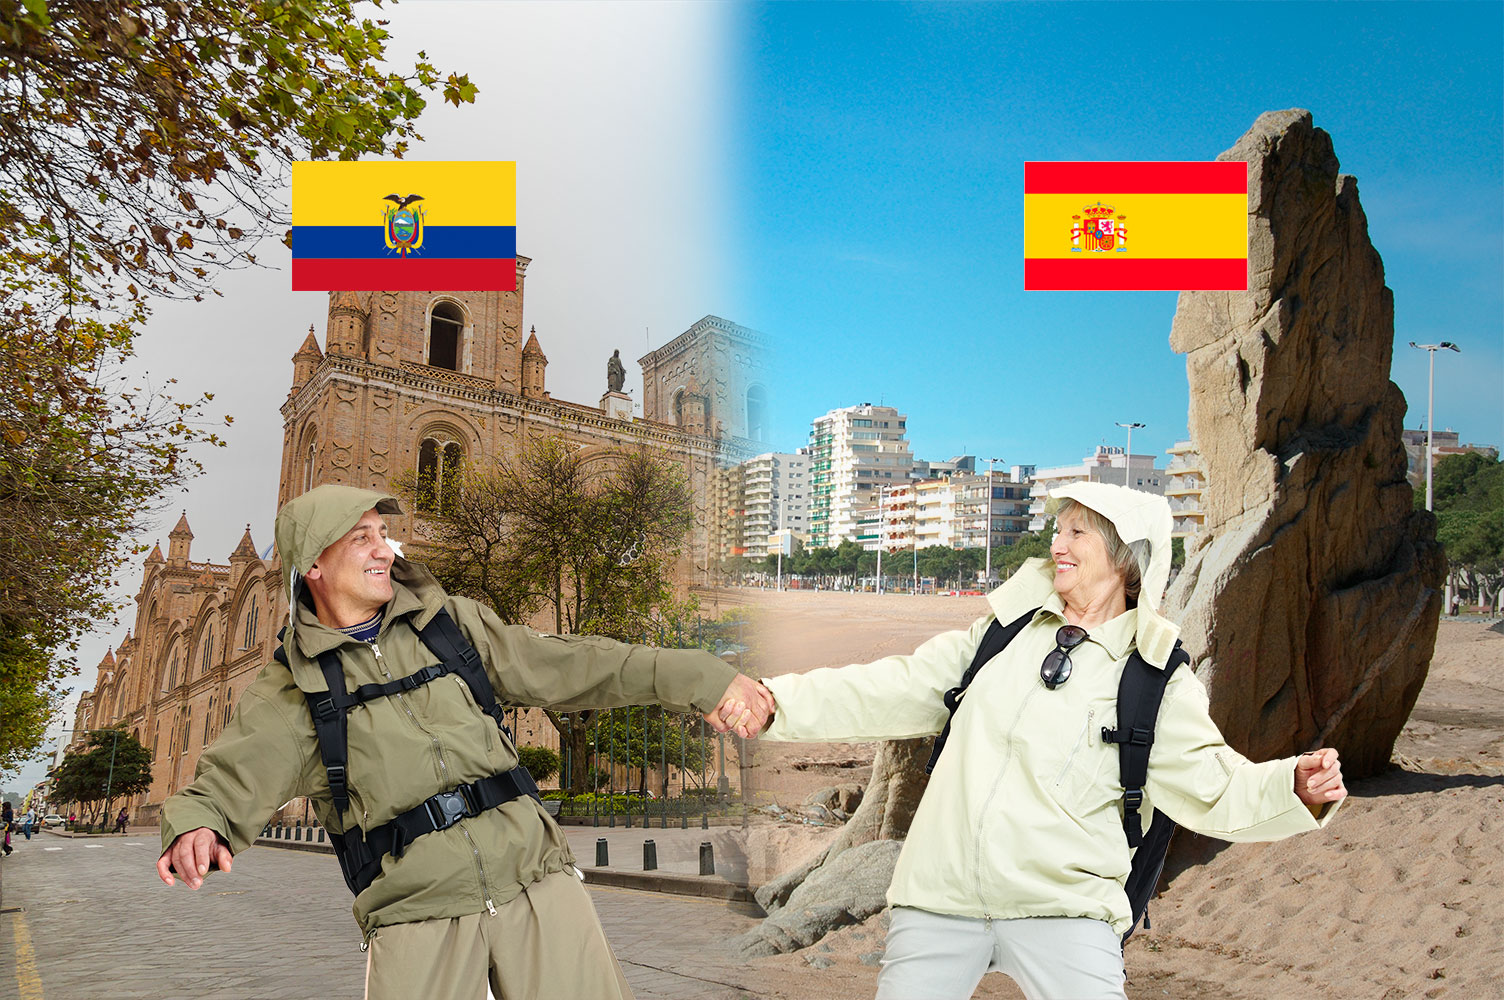 Hablamos gibt die Möglichkeit in Spanien oder Lateinamerika “Spanisch zu erleben”.